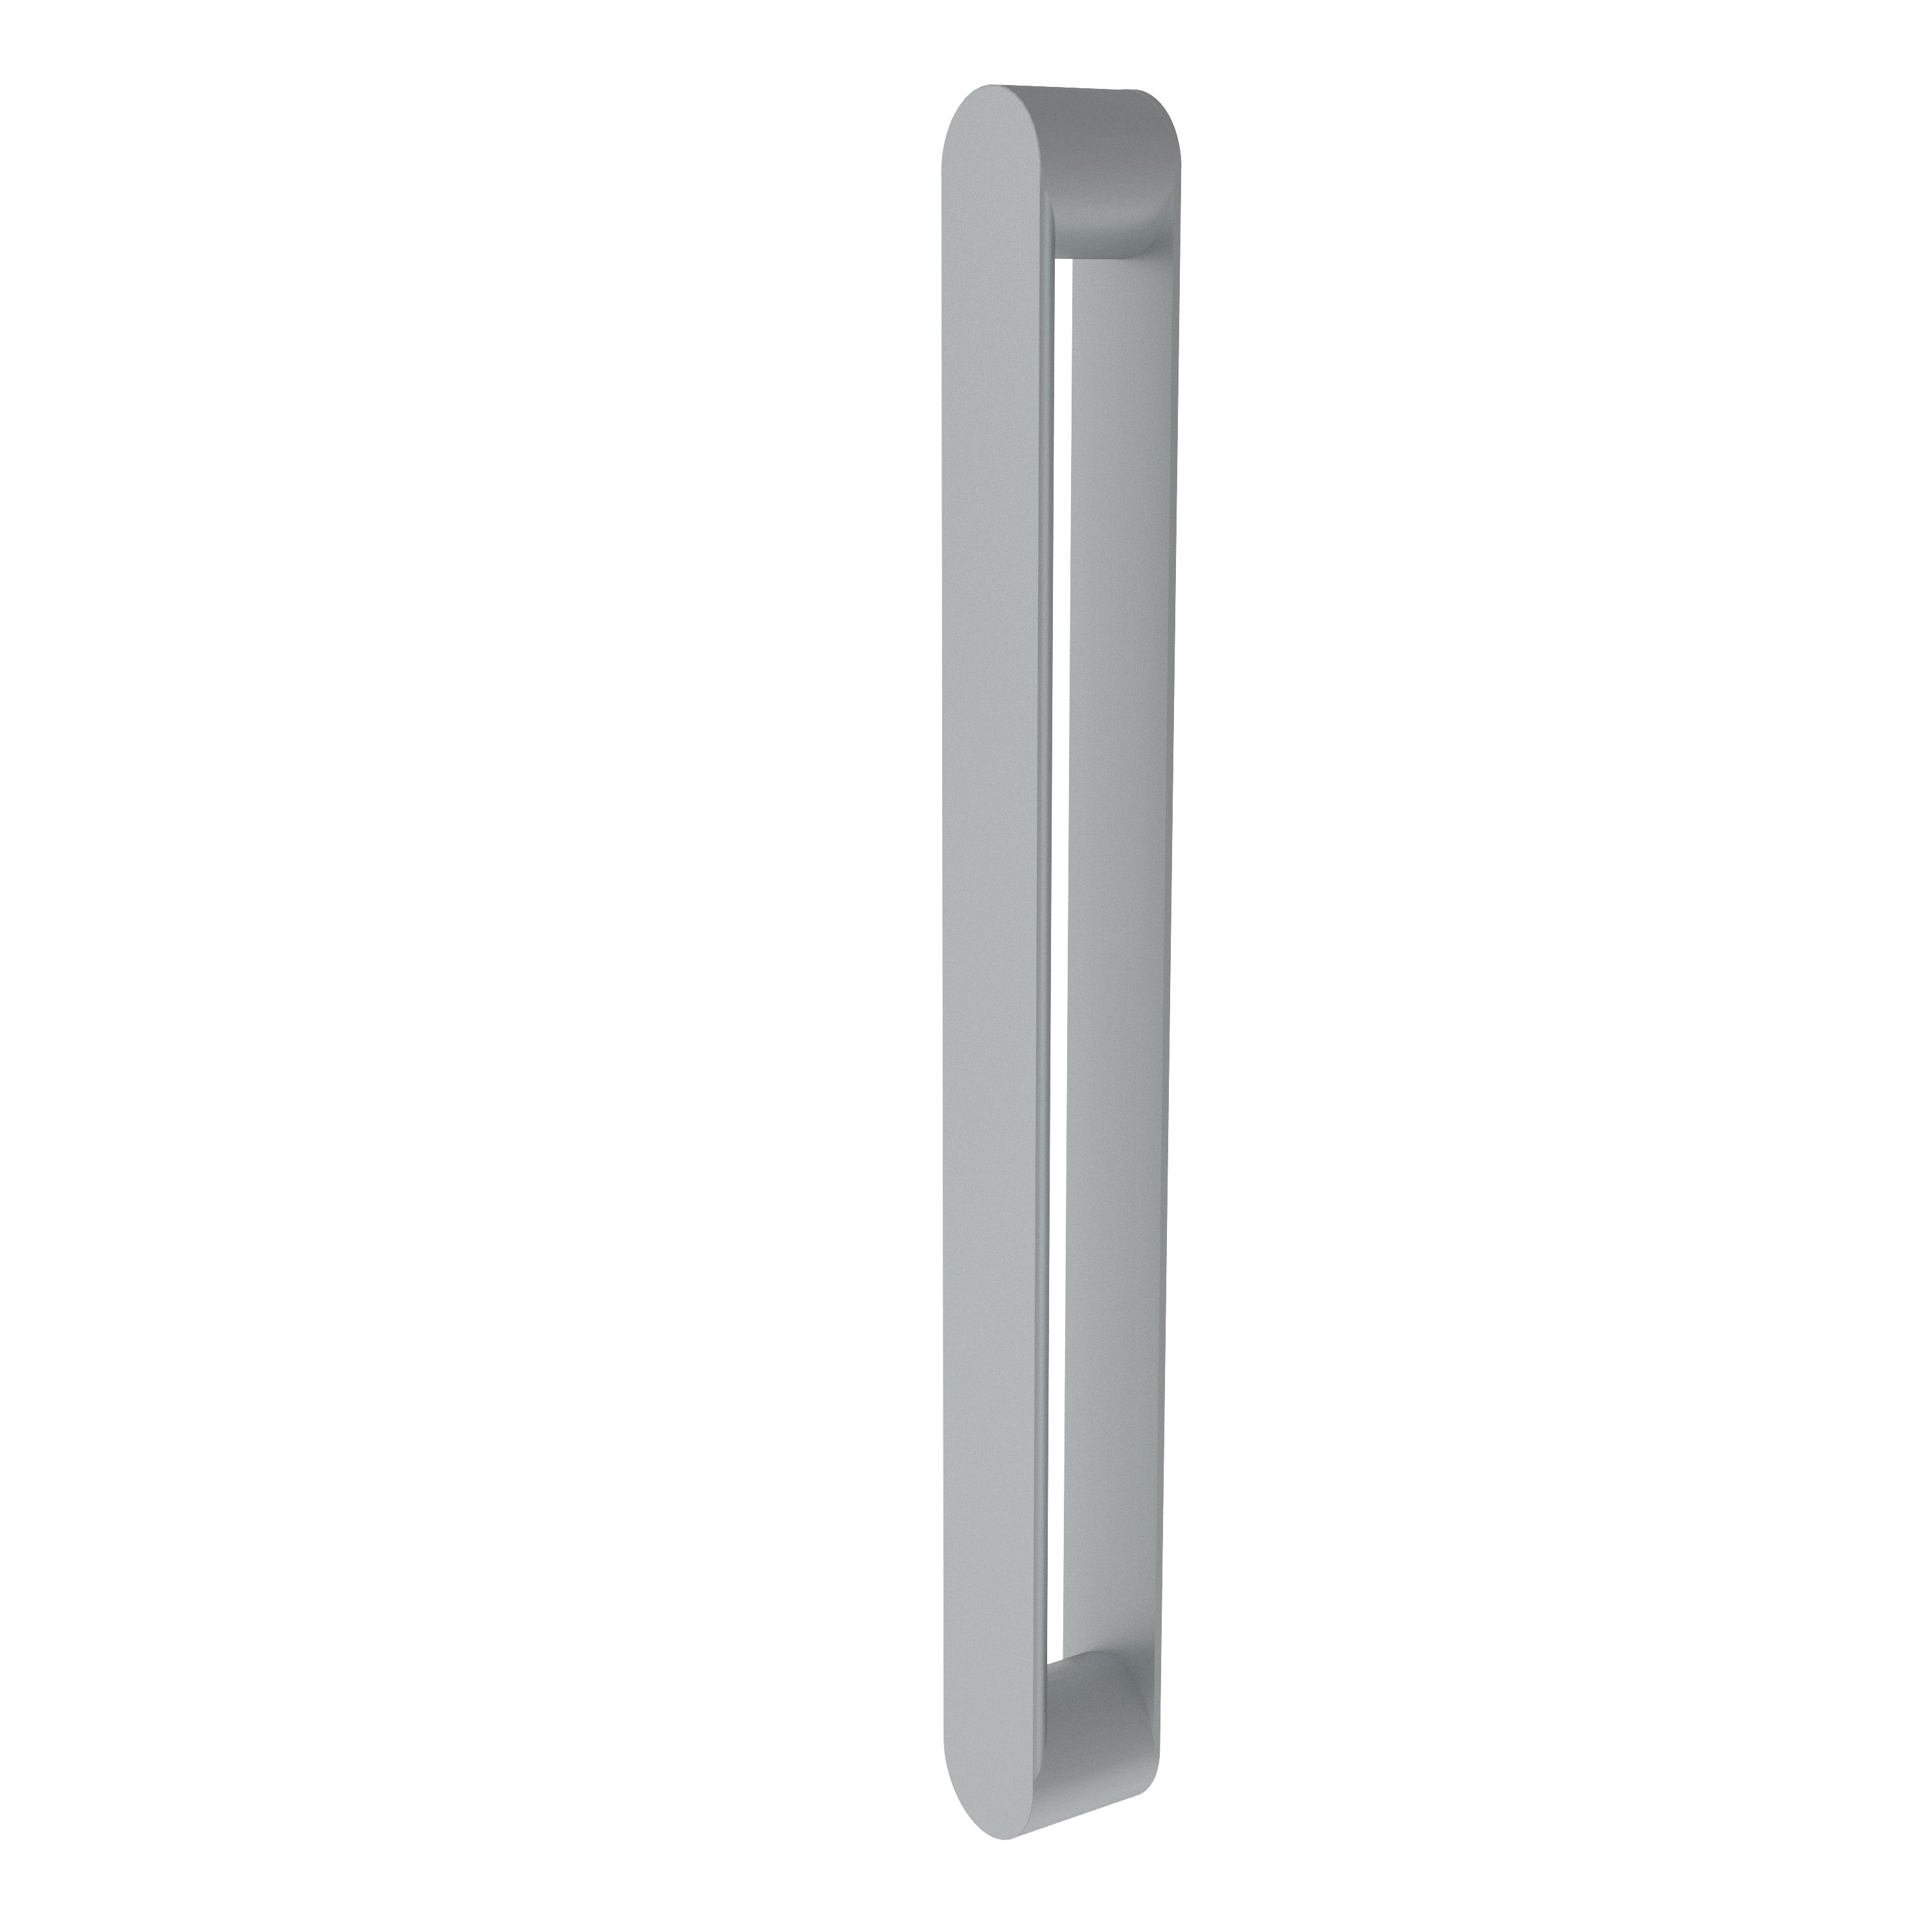 Griffstange mit selbstklebend Grundplatte Tavara Edelstahl Ø 20 mm Länge 225 mm Achsabstand 200 mm für Ganzglasschiebetür und Holzschiebetür